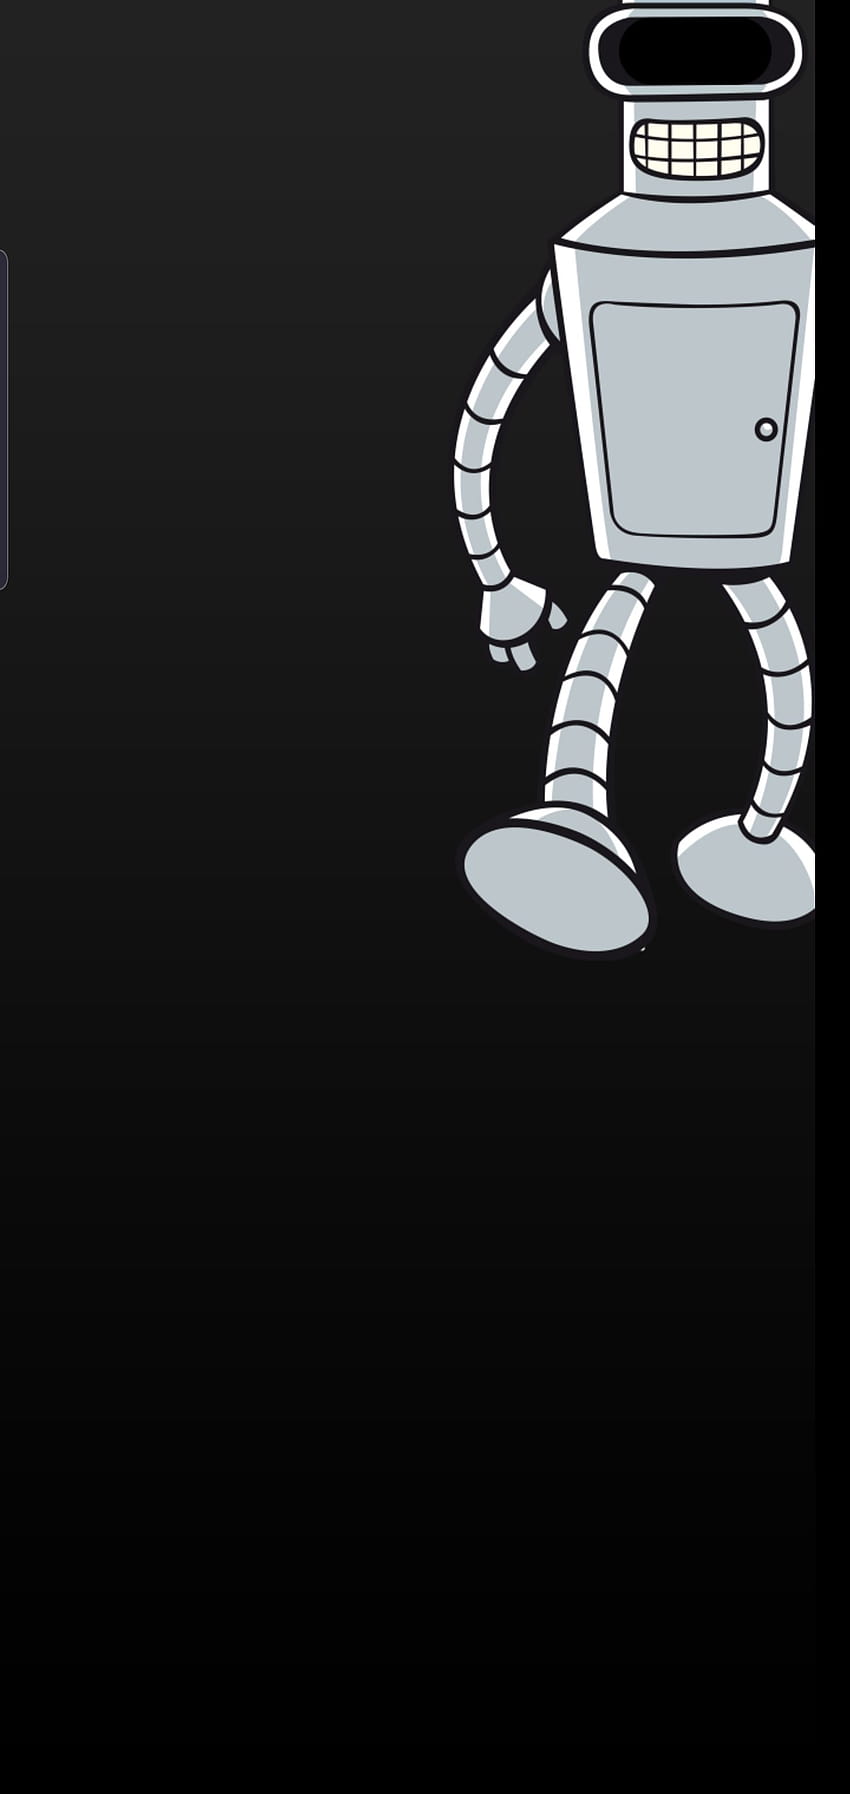 Bender, Futurama S10 5G ekran koruyucu/ HD telefon duvar kağıdı